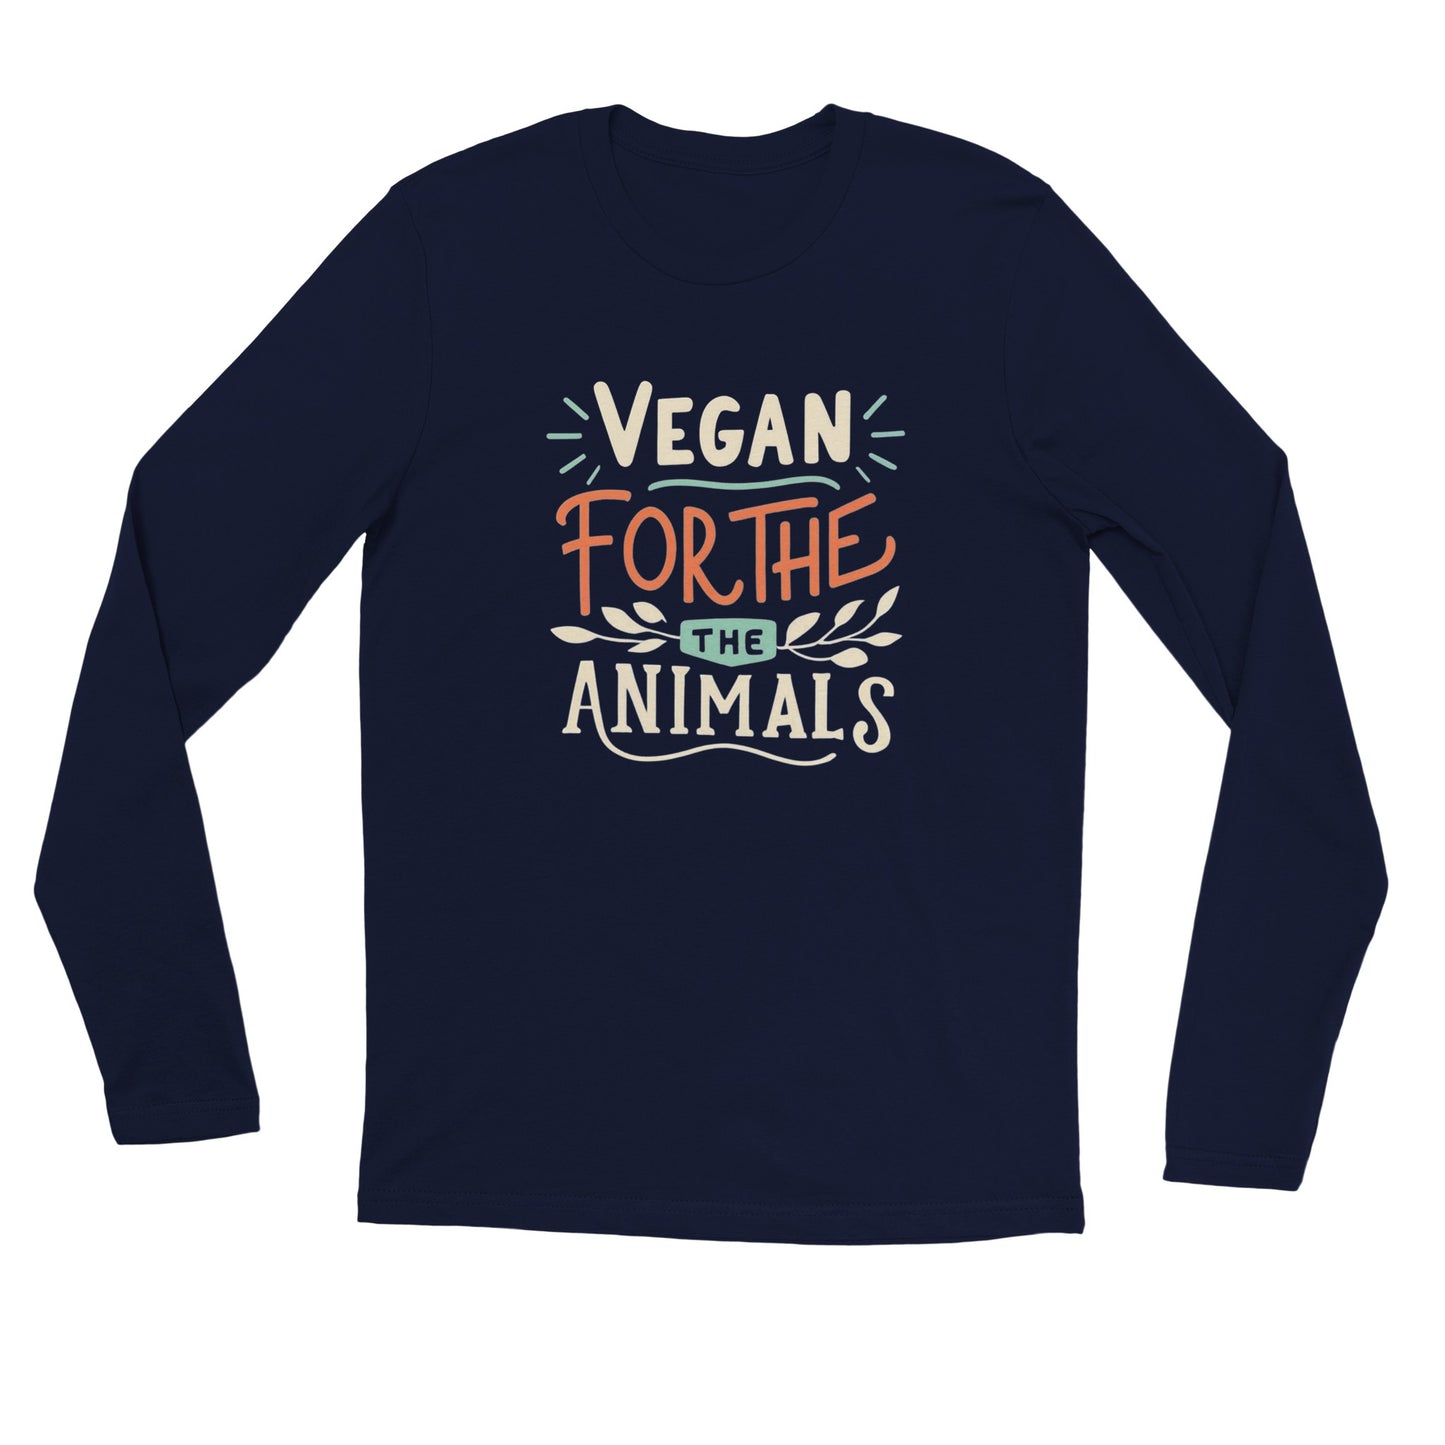 Vegan for the Animals - Unisex Longsleeve T-shirt